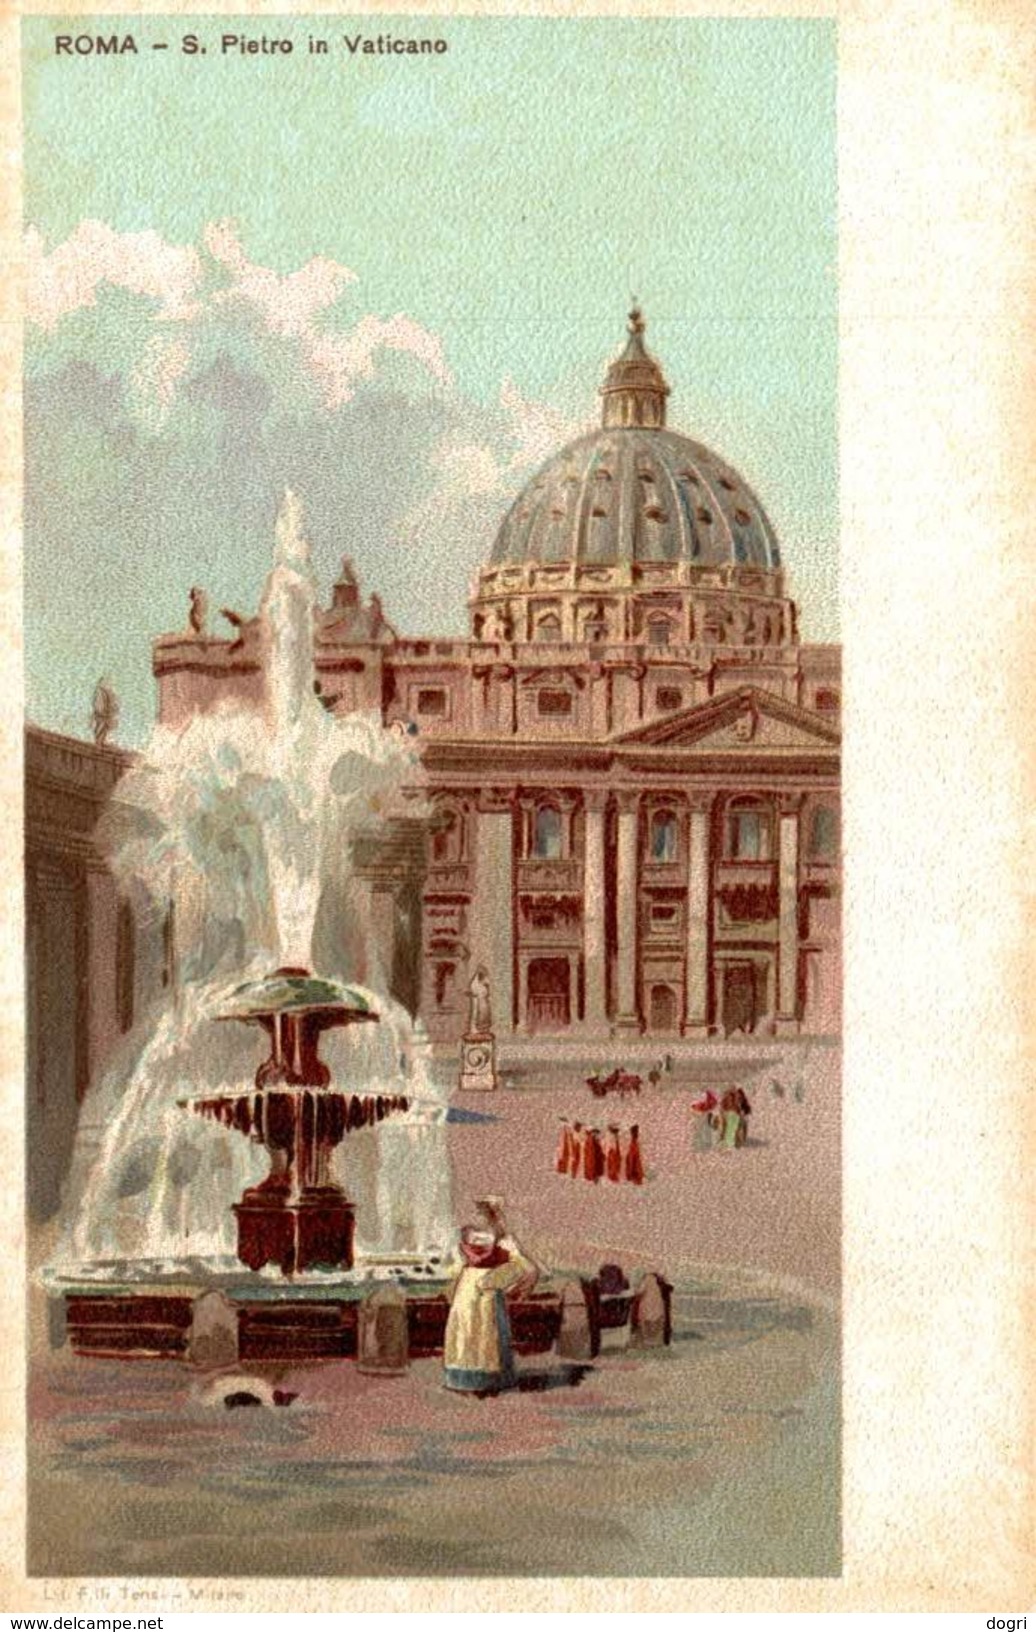 Roma - Lotto 12 cartoline artistiche - 9x14 cm.  (Vedi 24 foto)